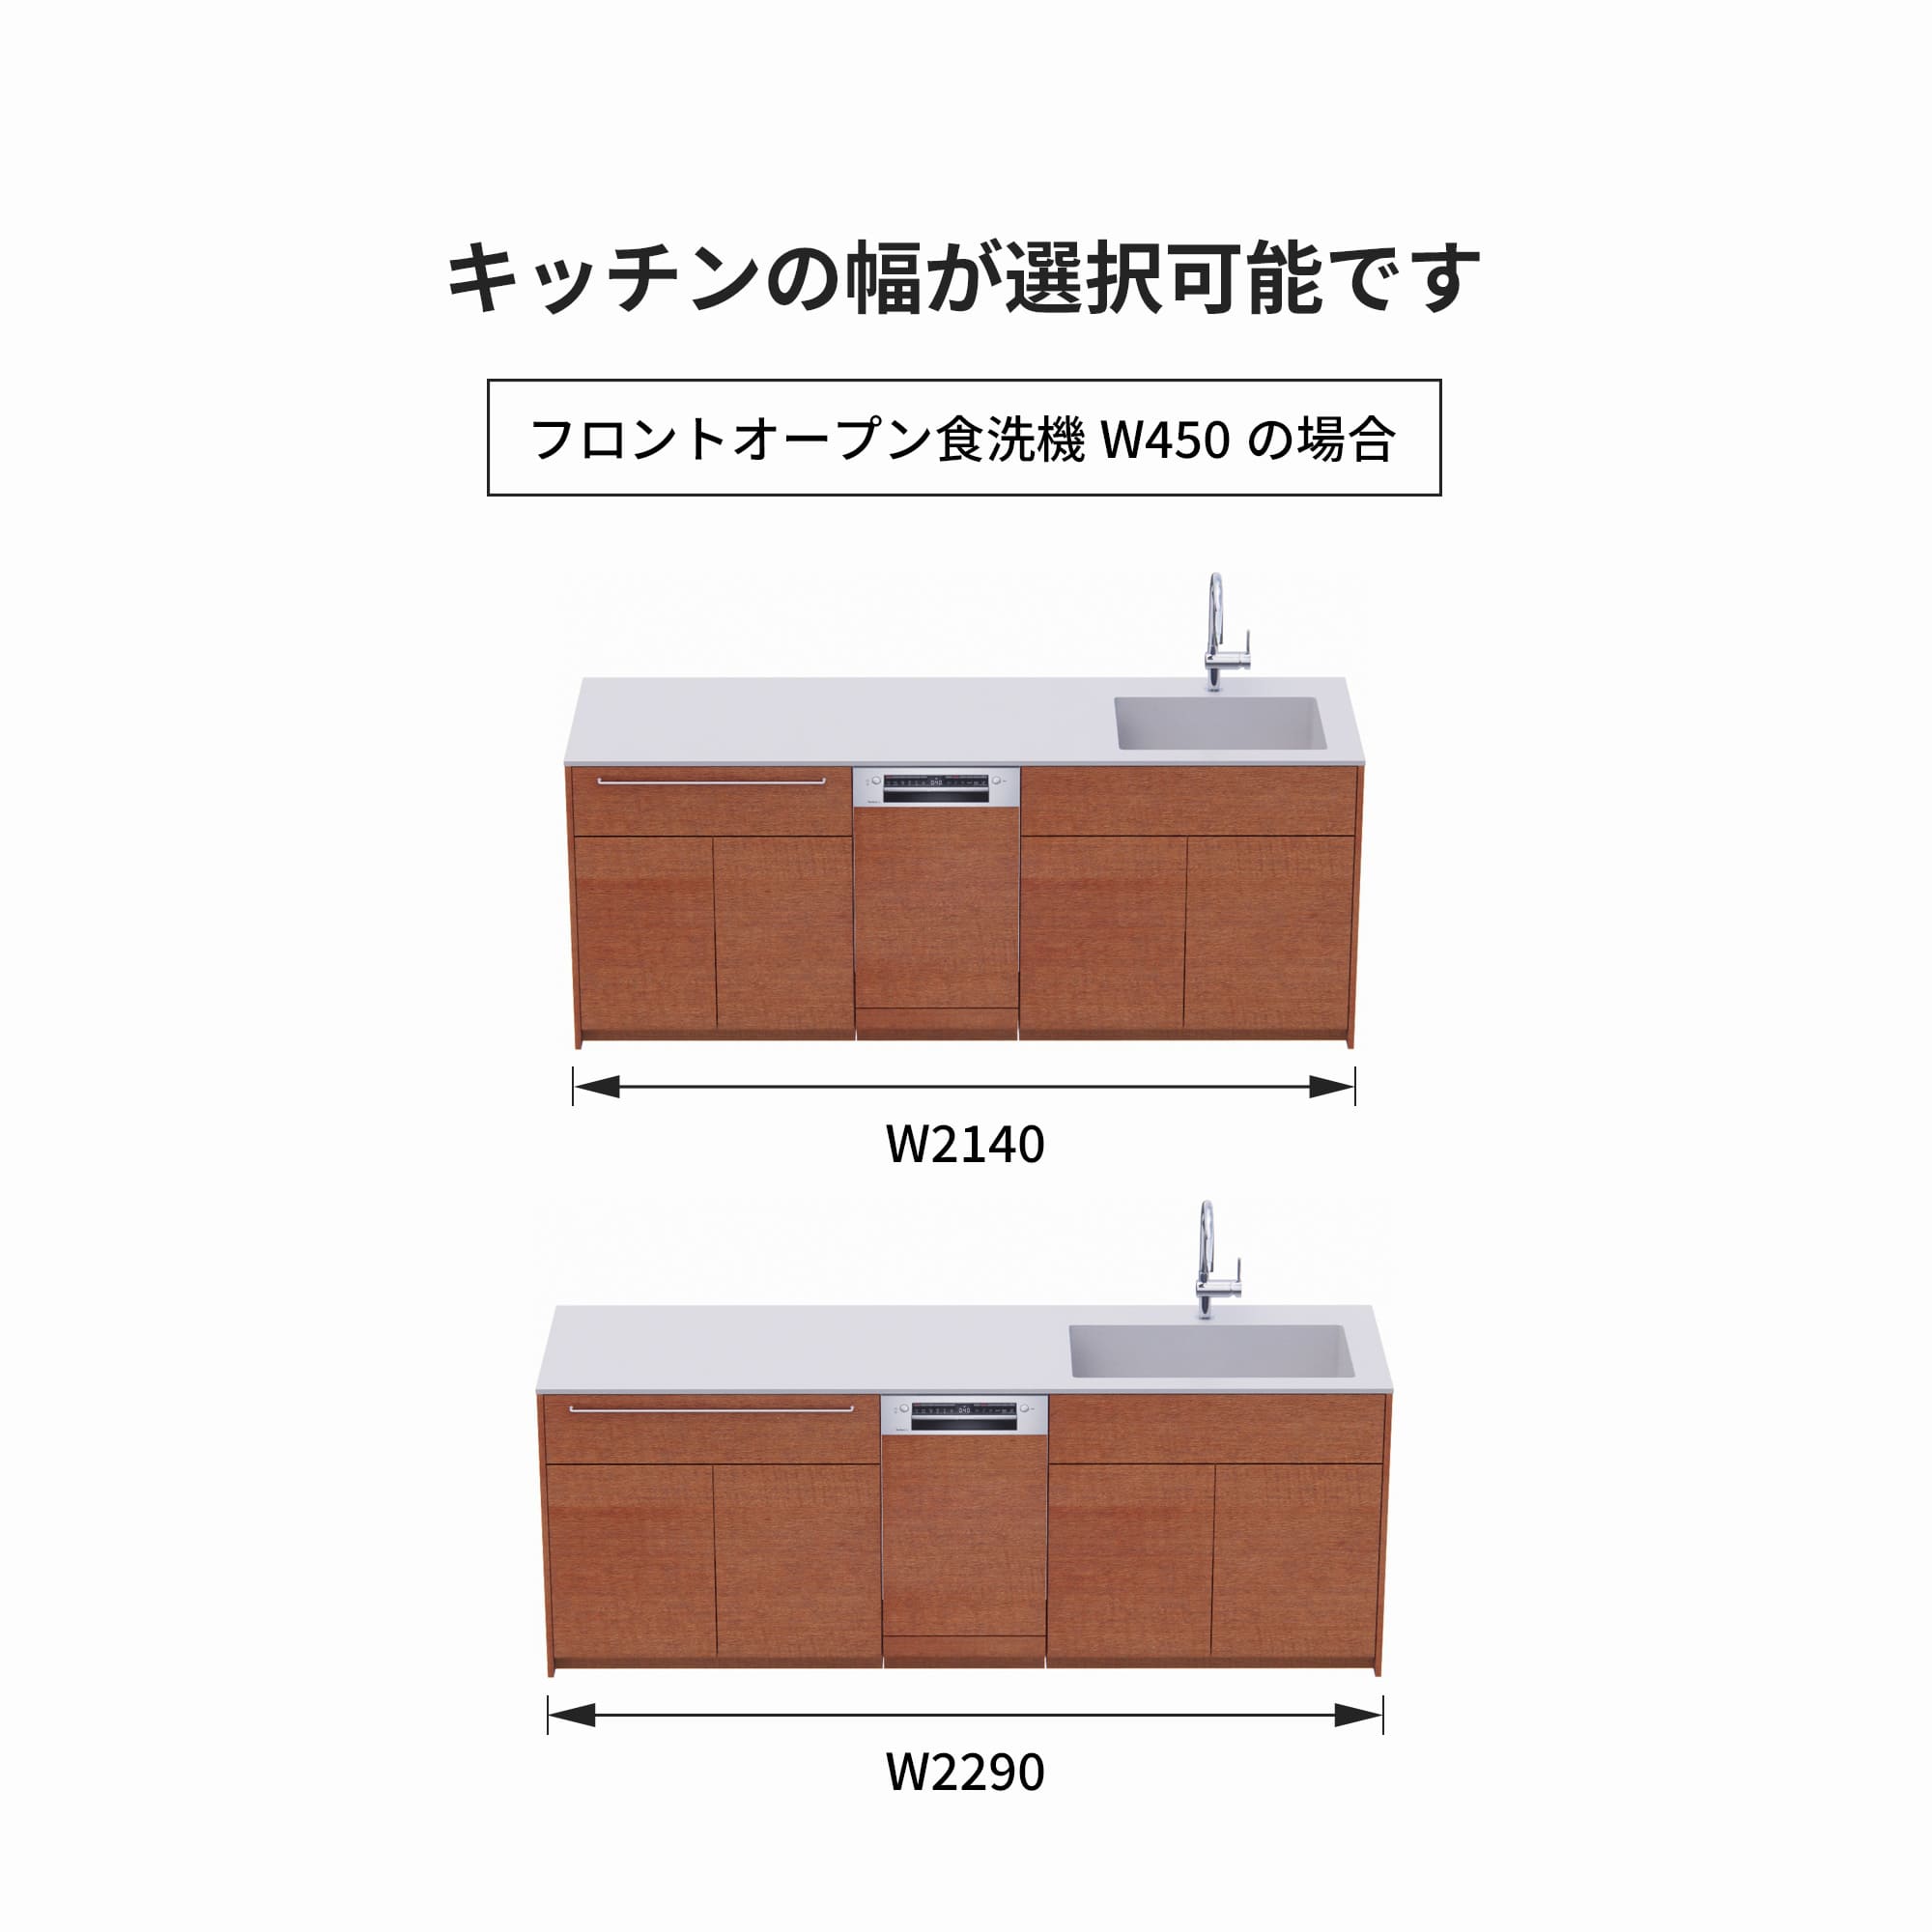 木製システムキッチン 壁付け型 W2140～2290・コンロなし / オーブンなし / 食洗機あり KB-KC022-21-G183 フロントオープン450の場合